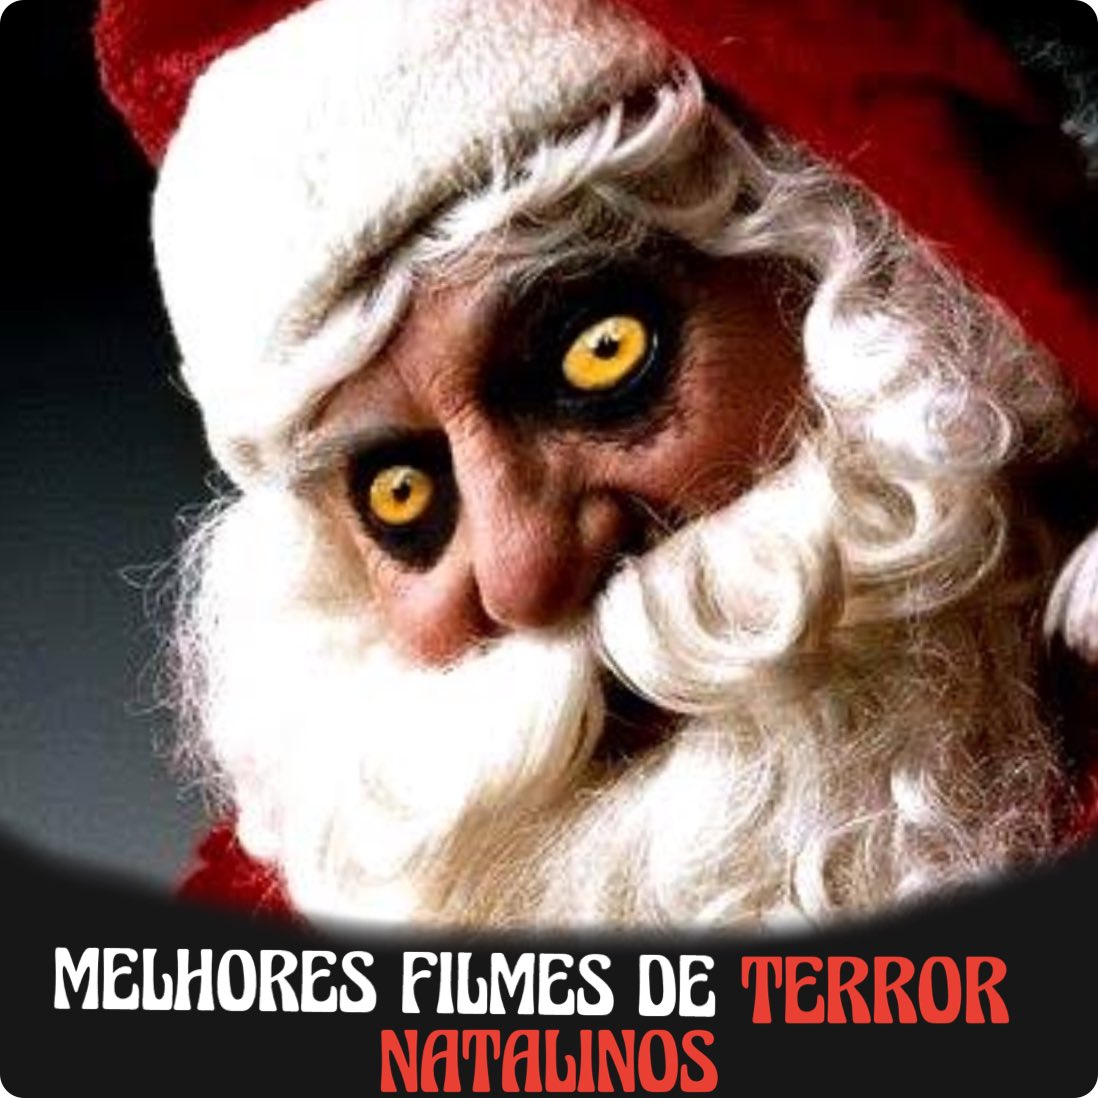 Portal do Medo on X: Lista dos melhores FILMES de TERROR de 2022 segundo a  crítica para ver esse nesse fim de ano.  / X